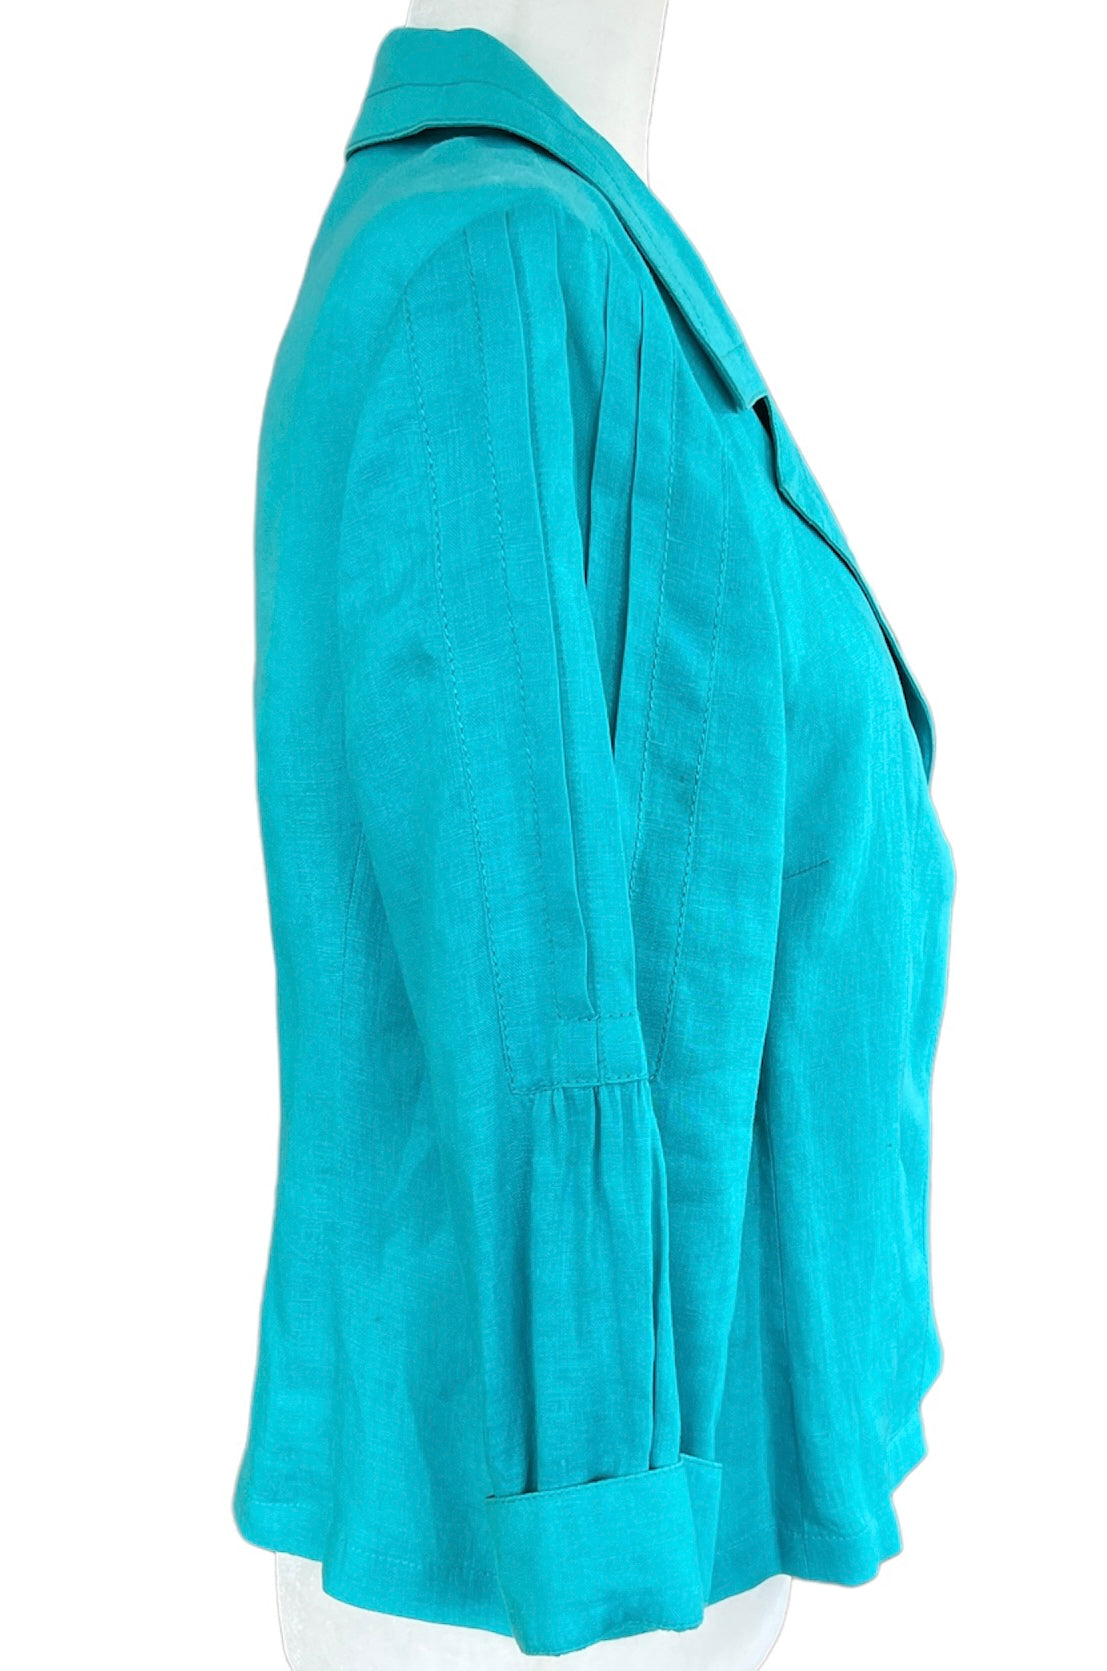 Carlisle Linen Jacket in Aqua, 10